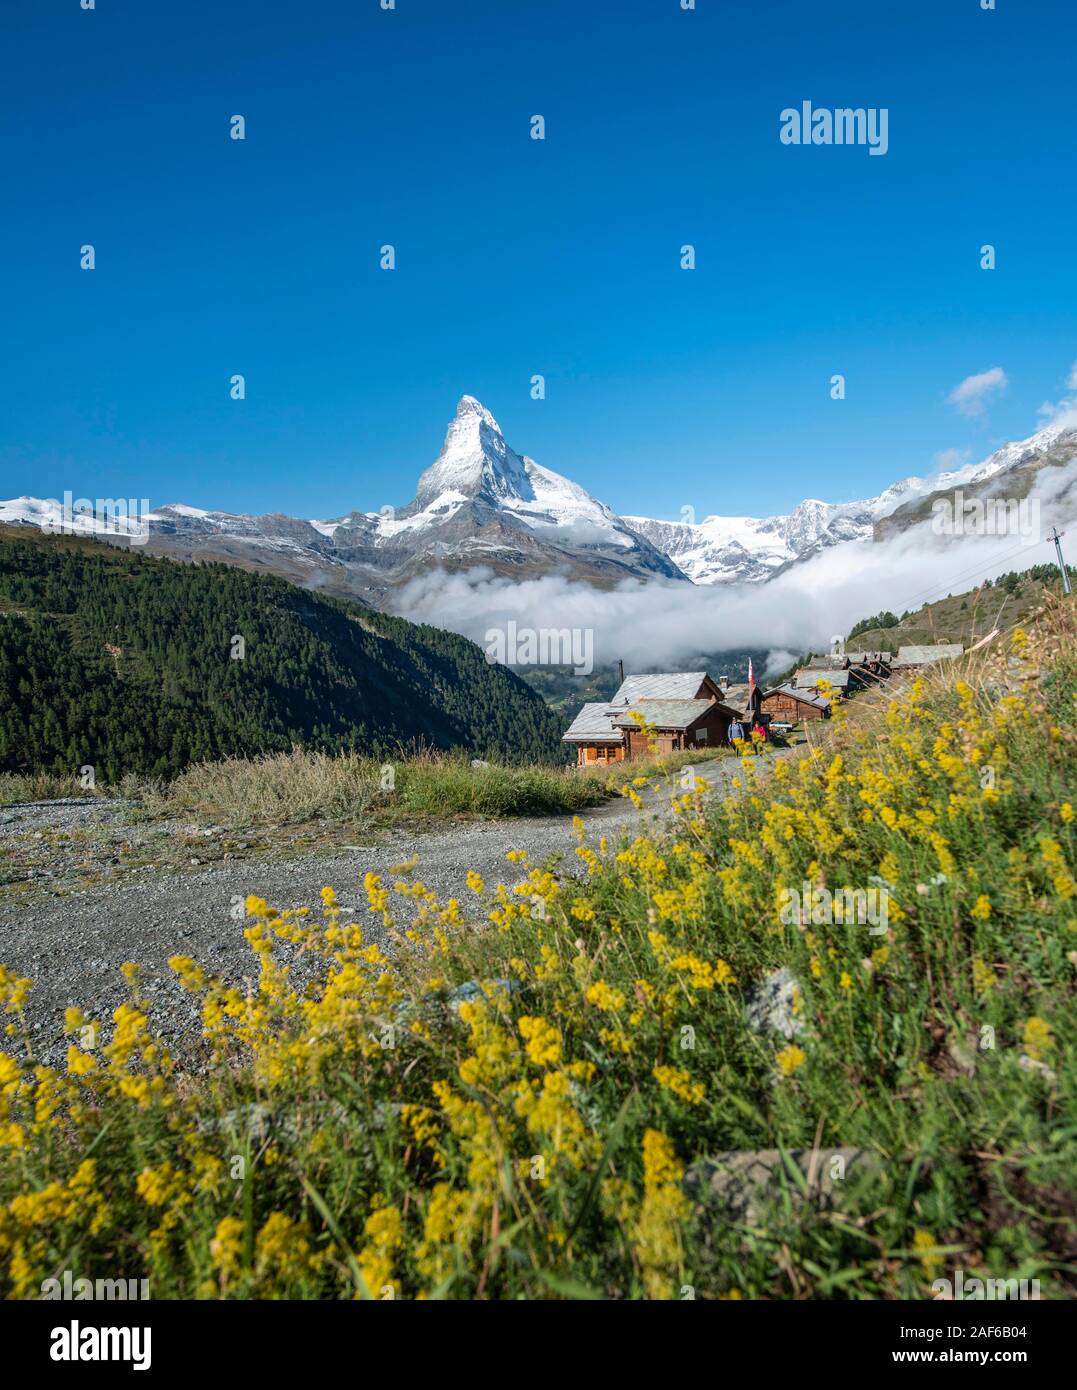 Fleurs jaunes en fleurs en face de Matterhorn, village de montagne avec des maisons en bois, Eggen, Valais, Suisse Banque D'Images